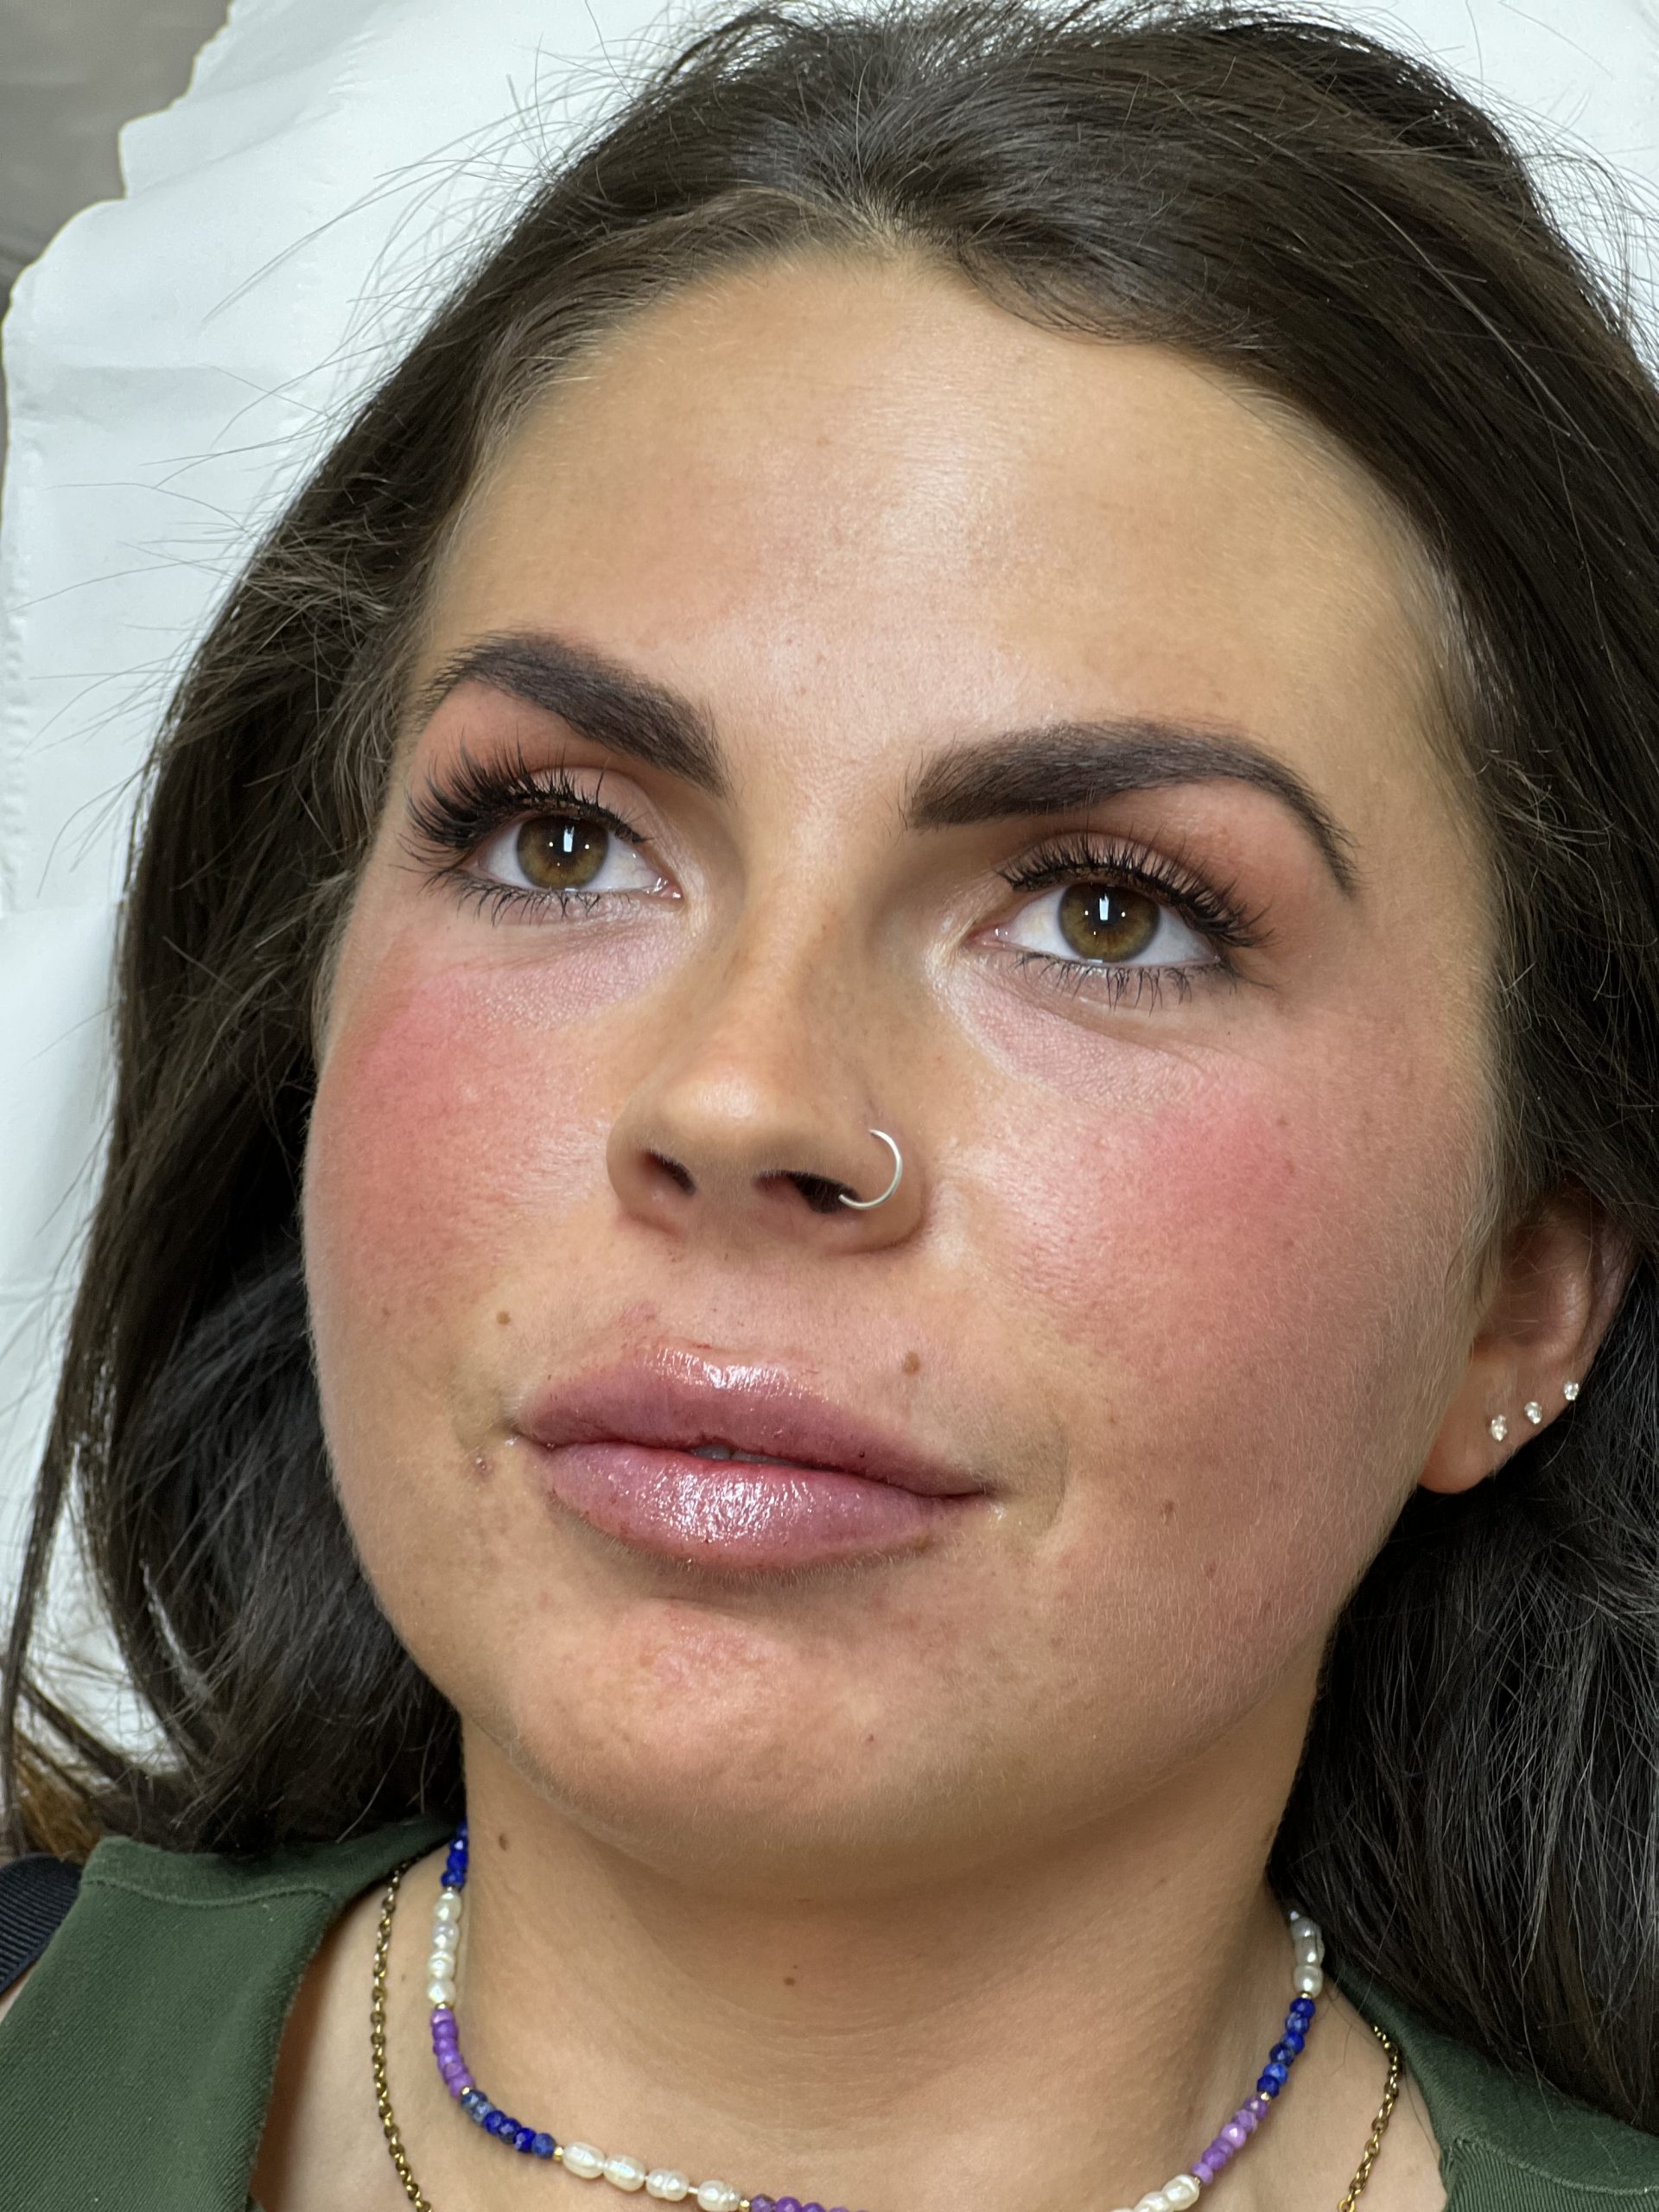 women show after lip filler effect on her face